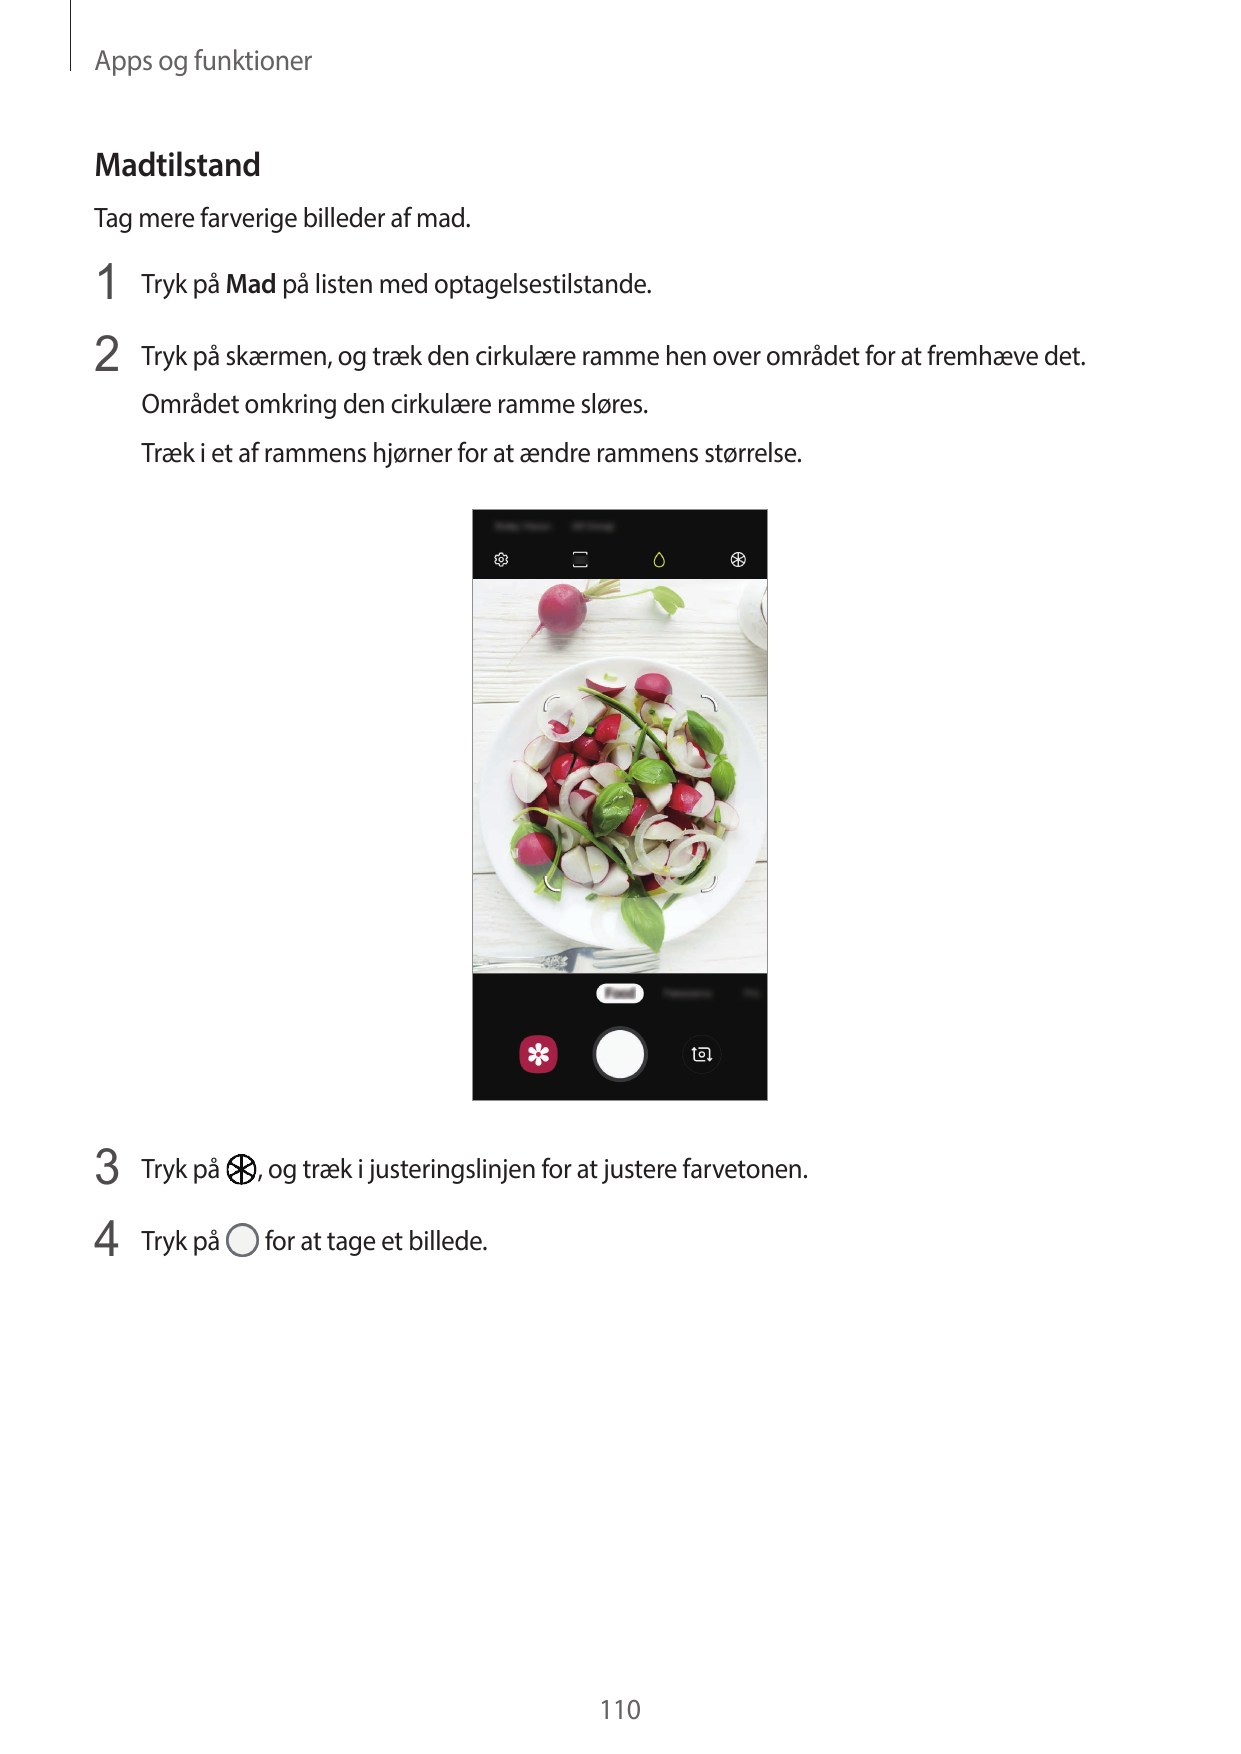 Apps og funktionerMadtilstandTag mere farverige billeder af mad.1 Tryk på Mad på listen med optagelsestilstande.2 Tryk på skærme